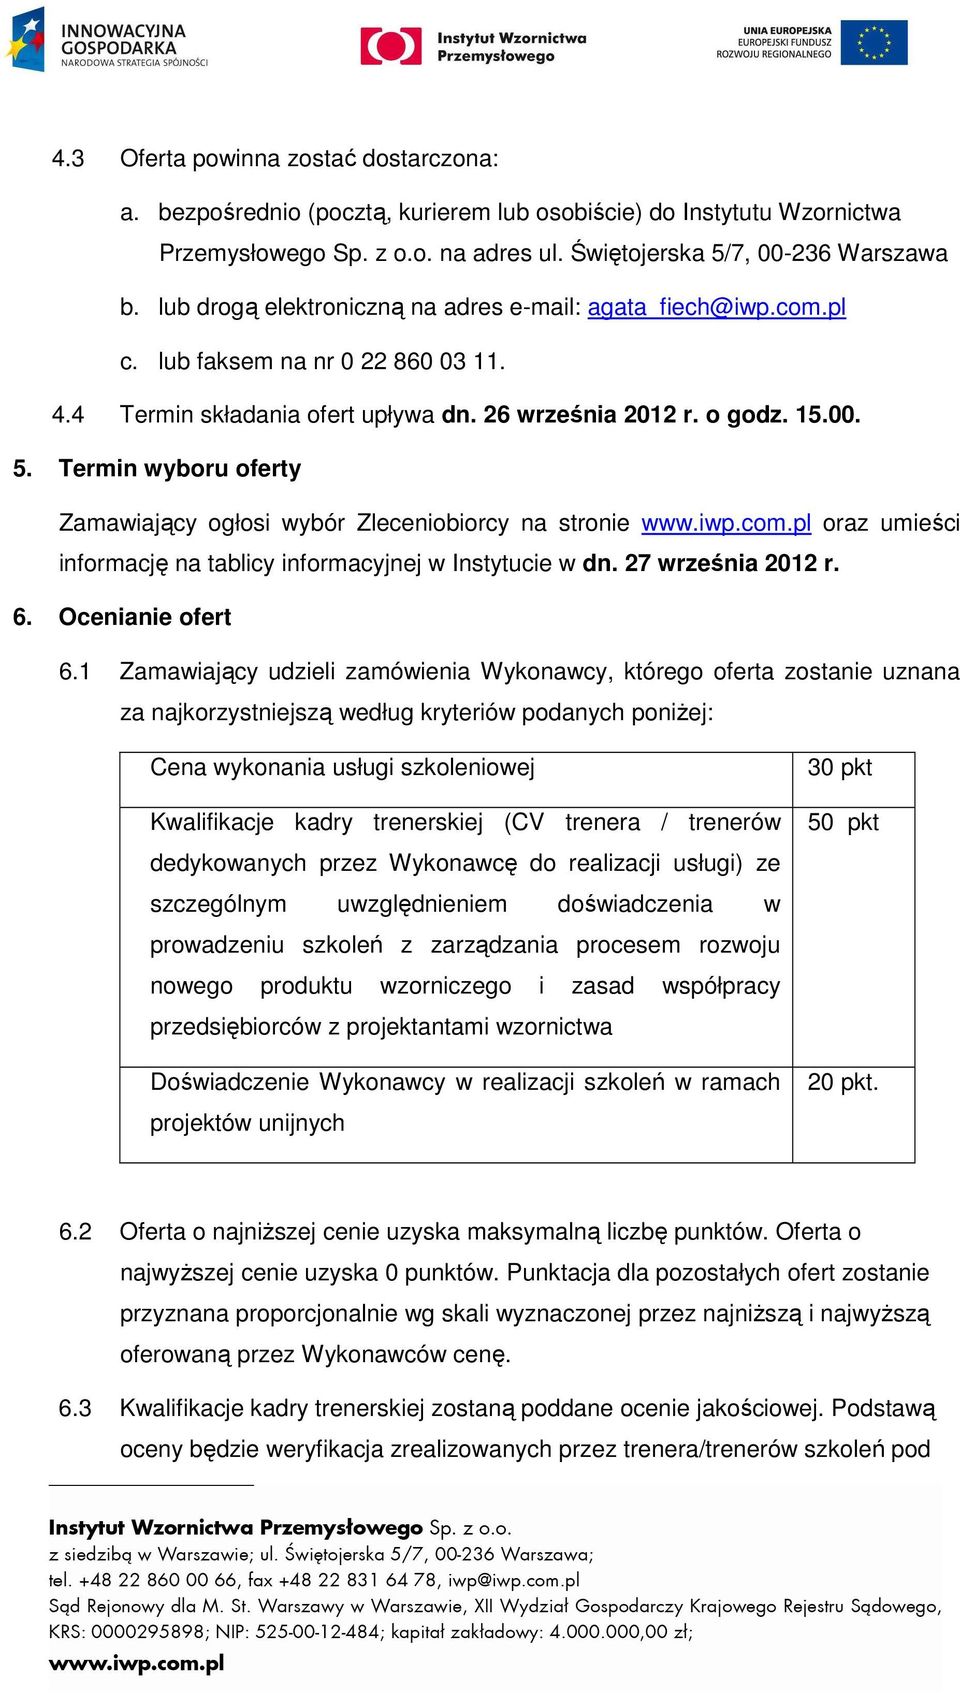 Termin wyboru oferty Zamawiający ogłosi wybór Zleceniobiorcy na stronie www.iwp.com.pl oraz umieści informację na tablicy informacyjnej w Instytucie w dn. 27 września 2012 r. 6. Ocenianie ofert 6.